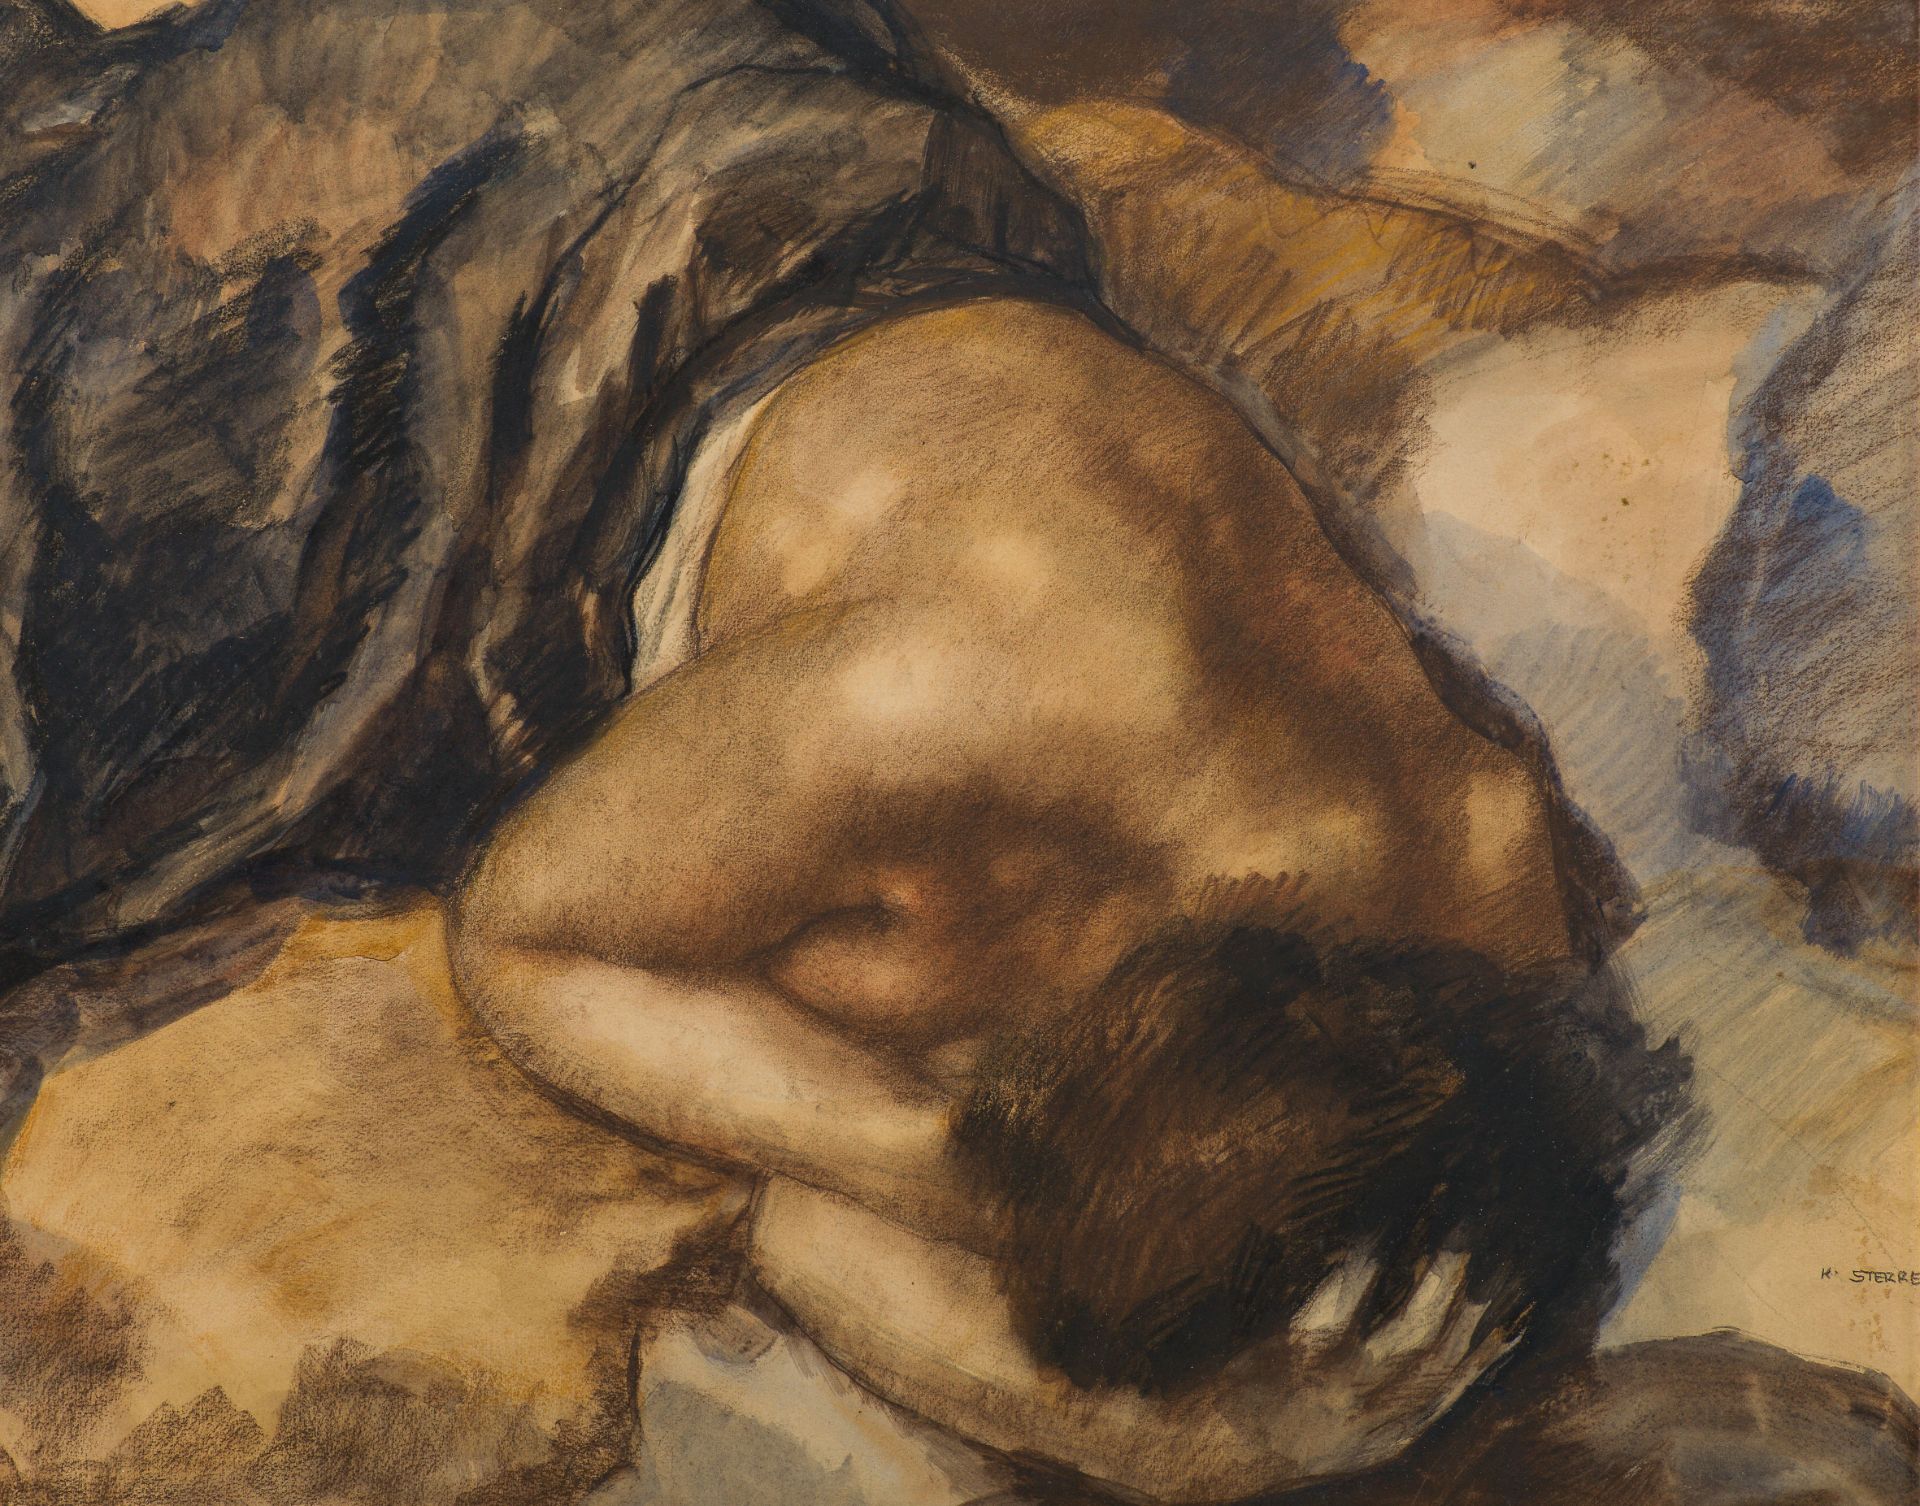 Karl Sterrer: Sleeping woman